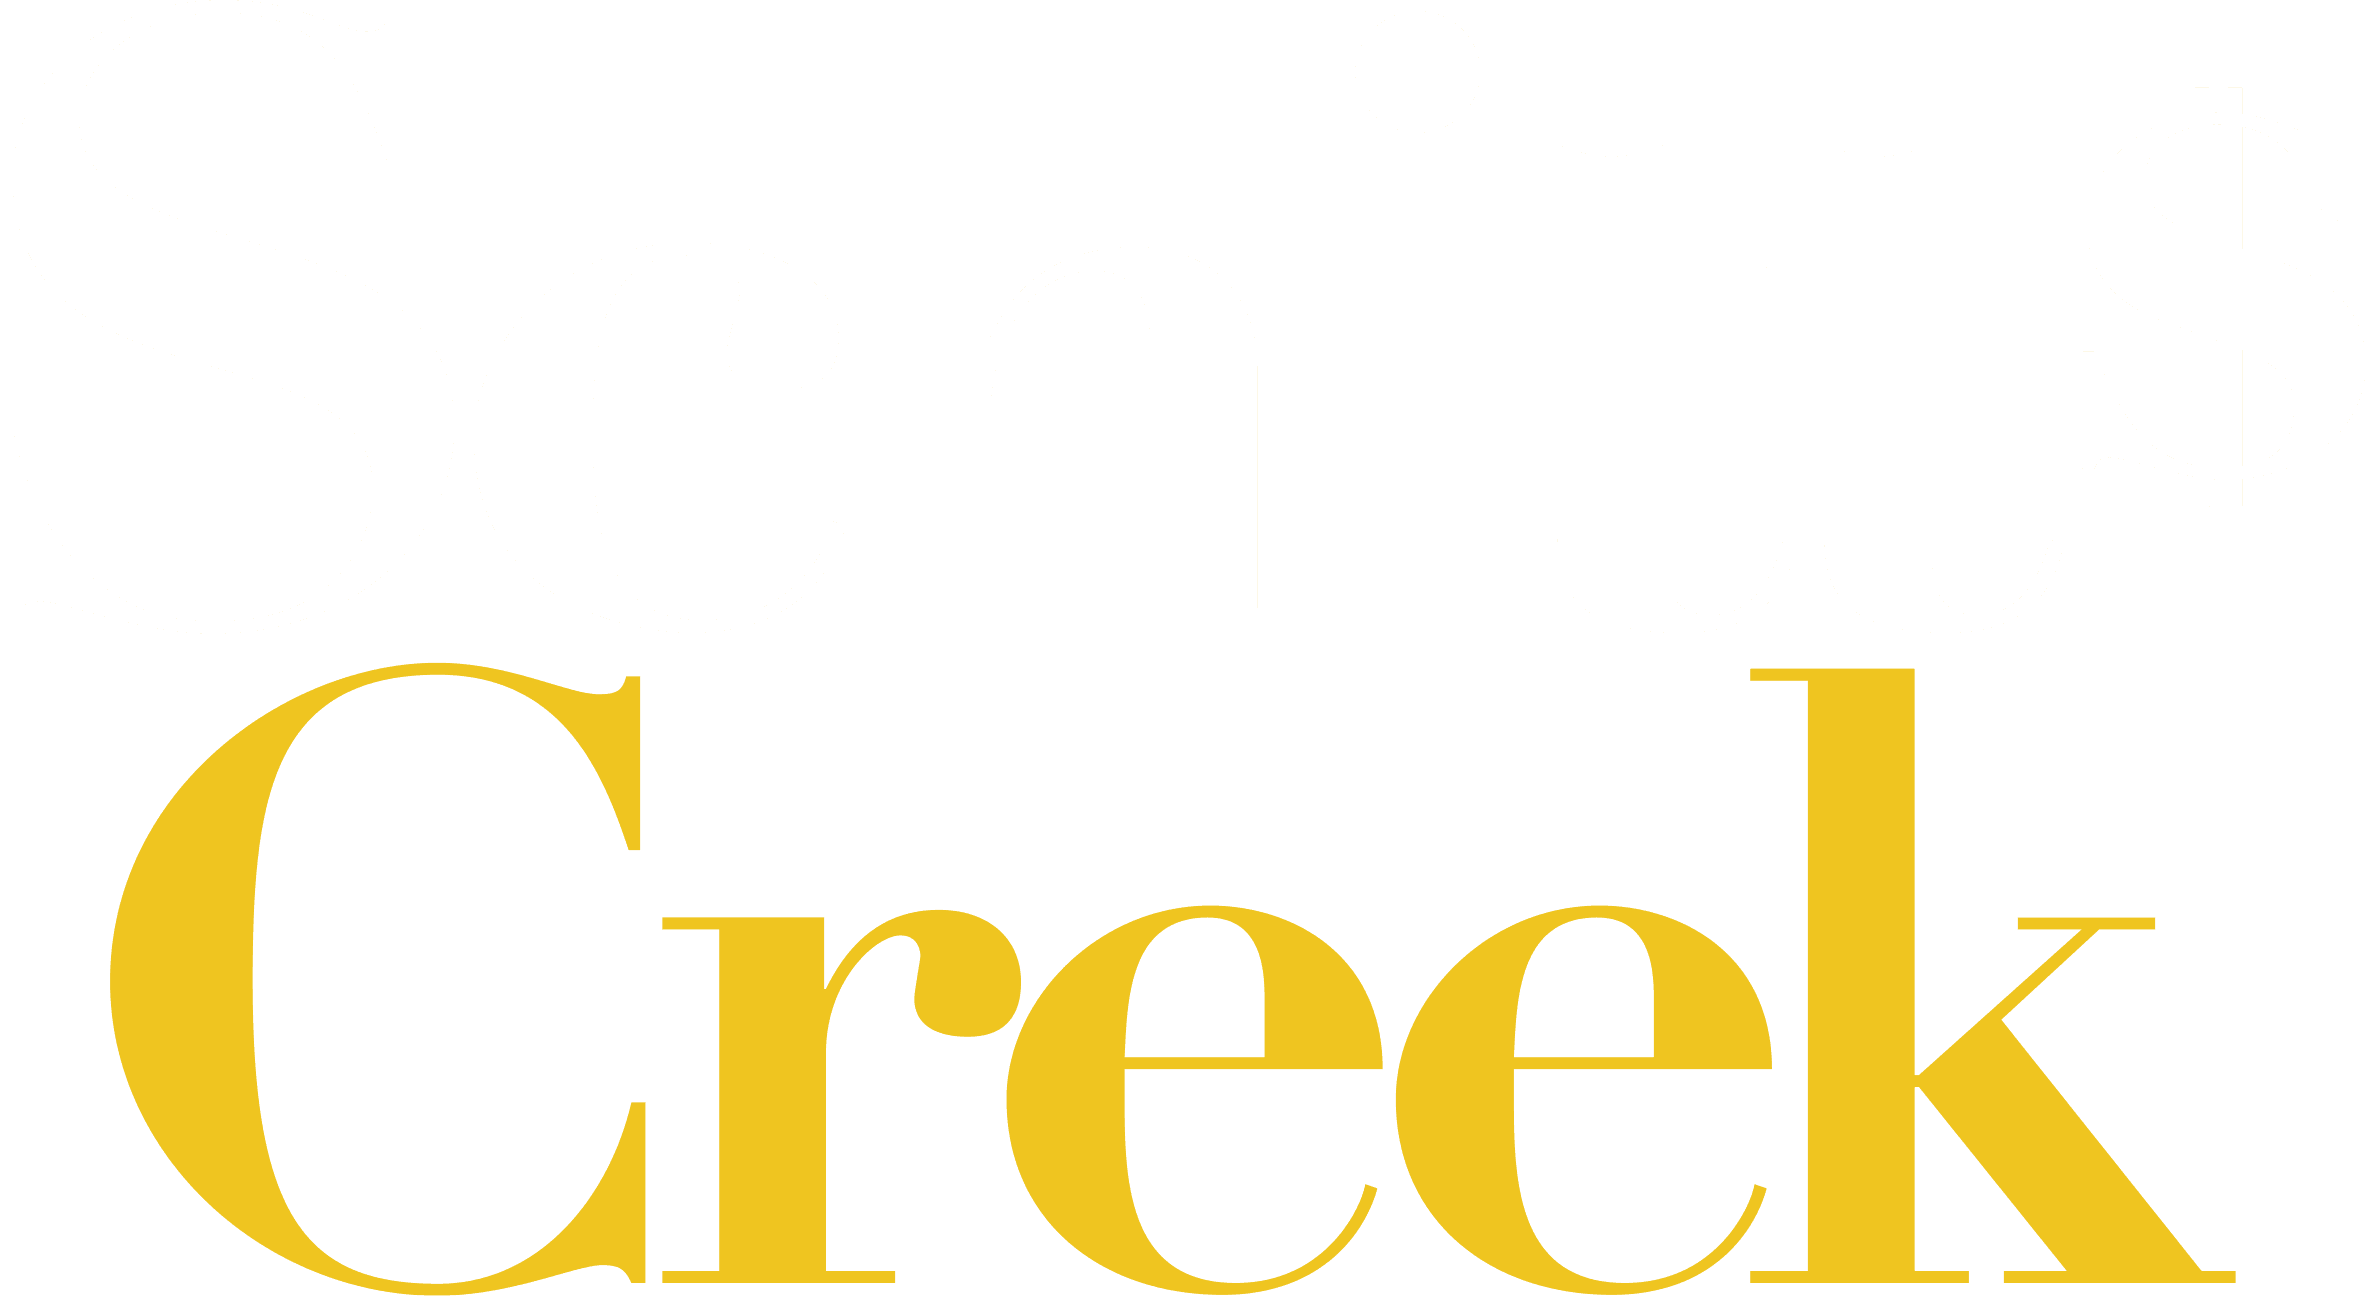 Schitt's Creek logo